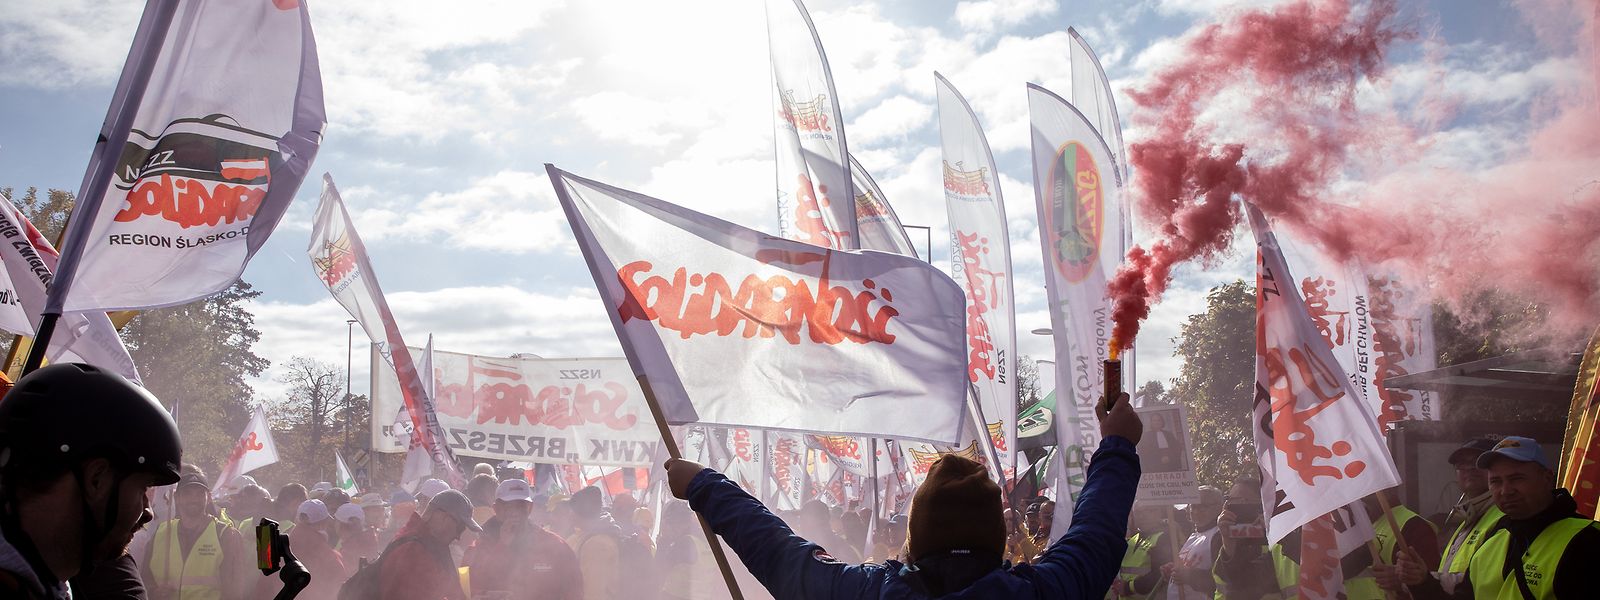 Die Bergarbeiter waren aus Polen angereist um gegen ein Urteil des europäischen Gerichtshofes zu protestieren.